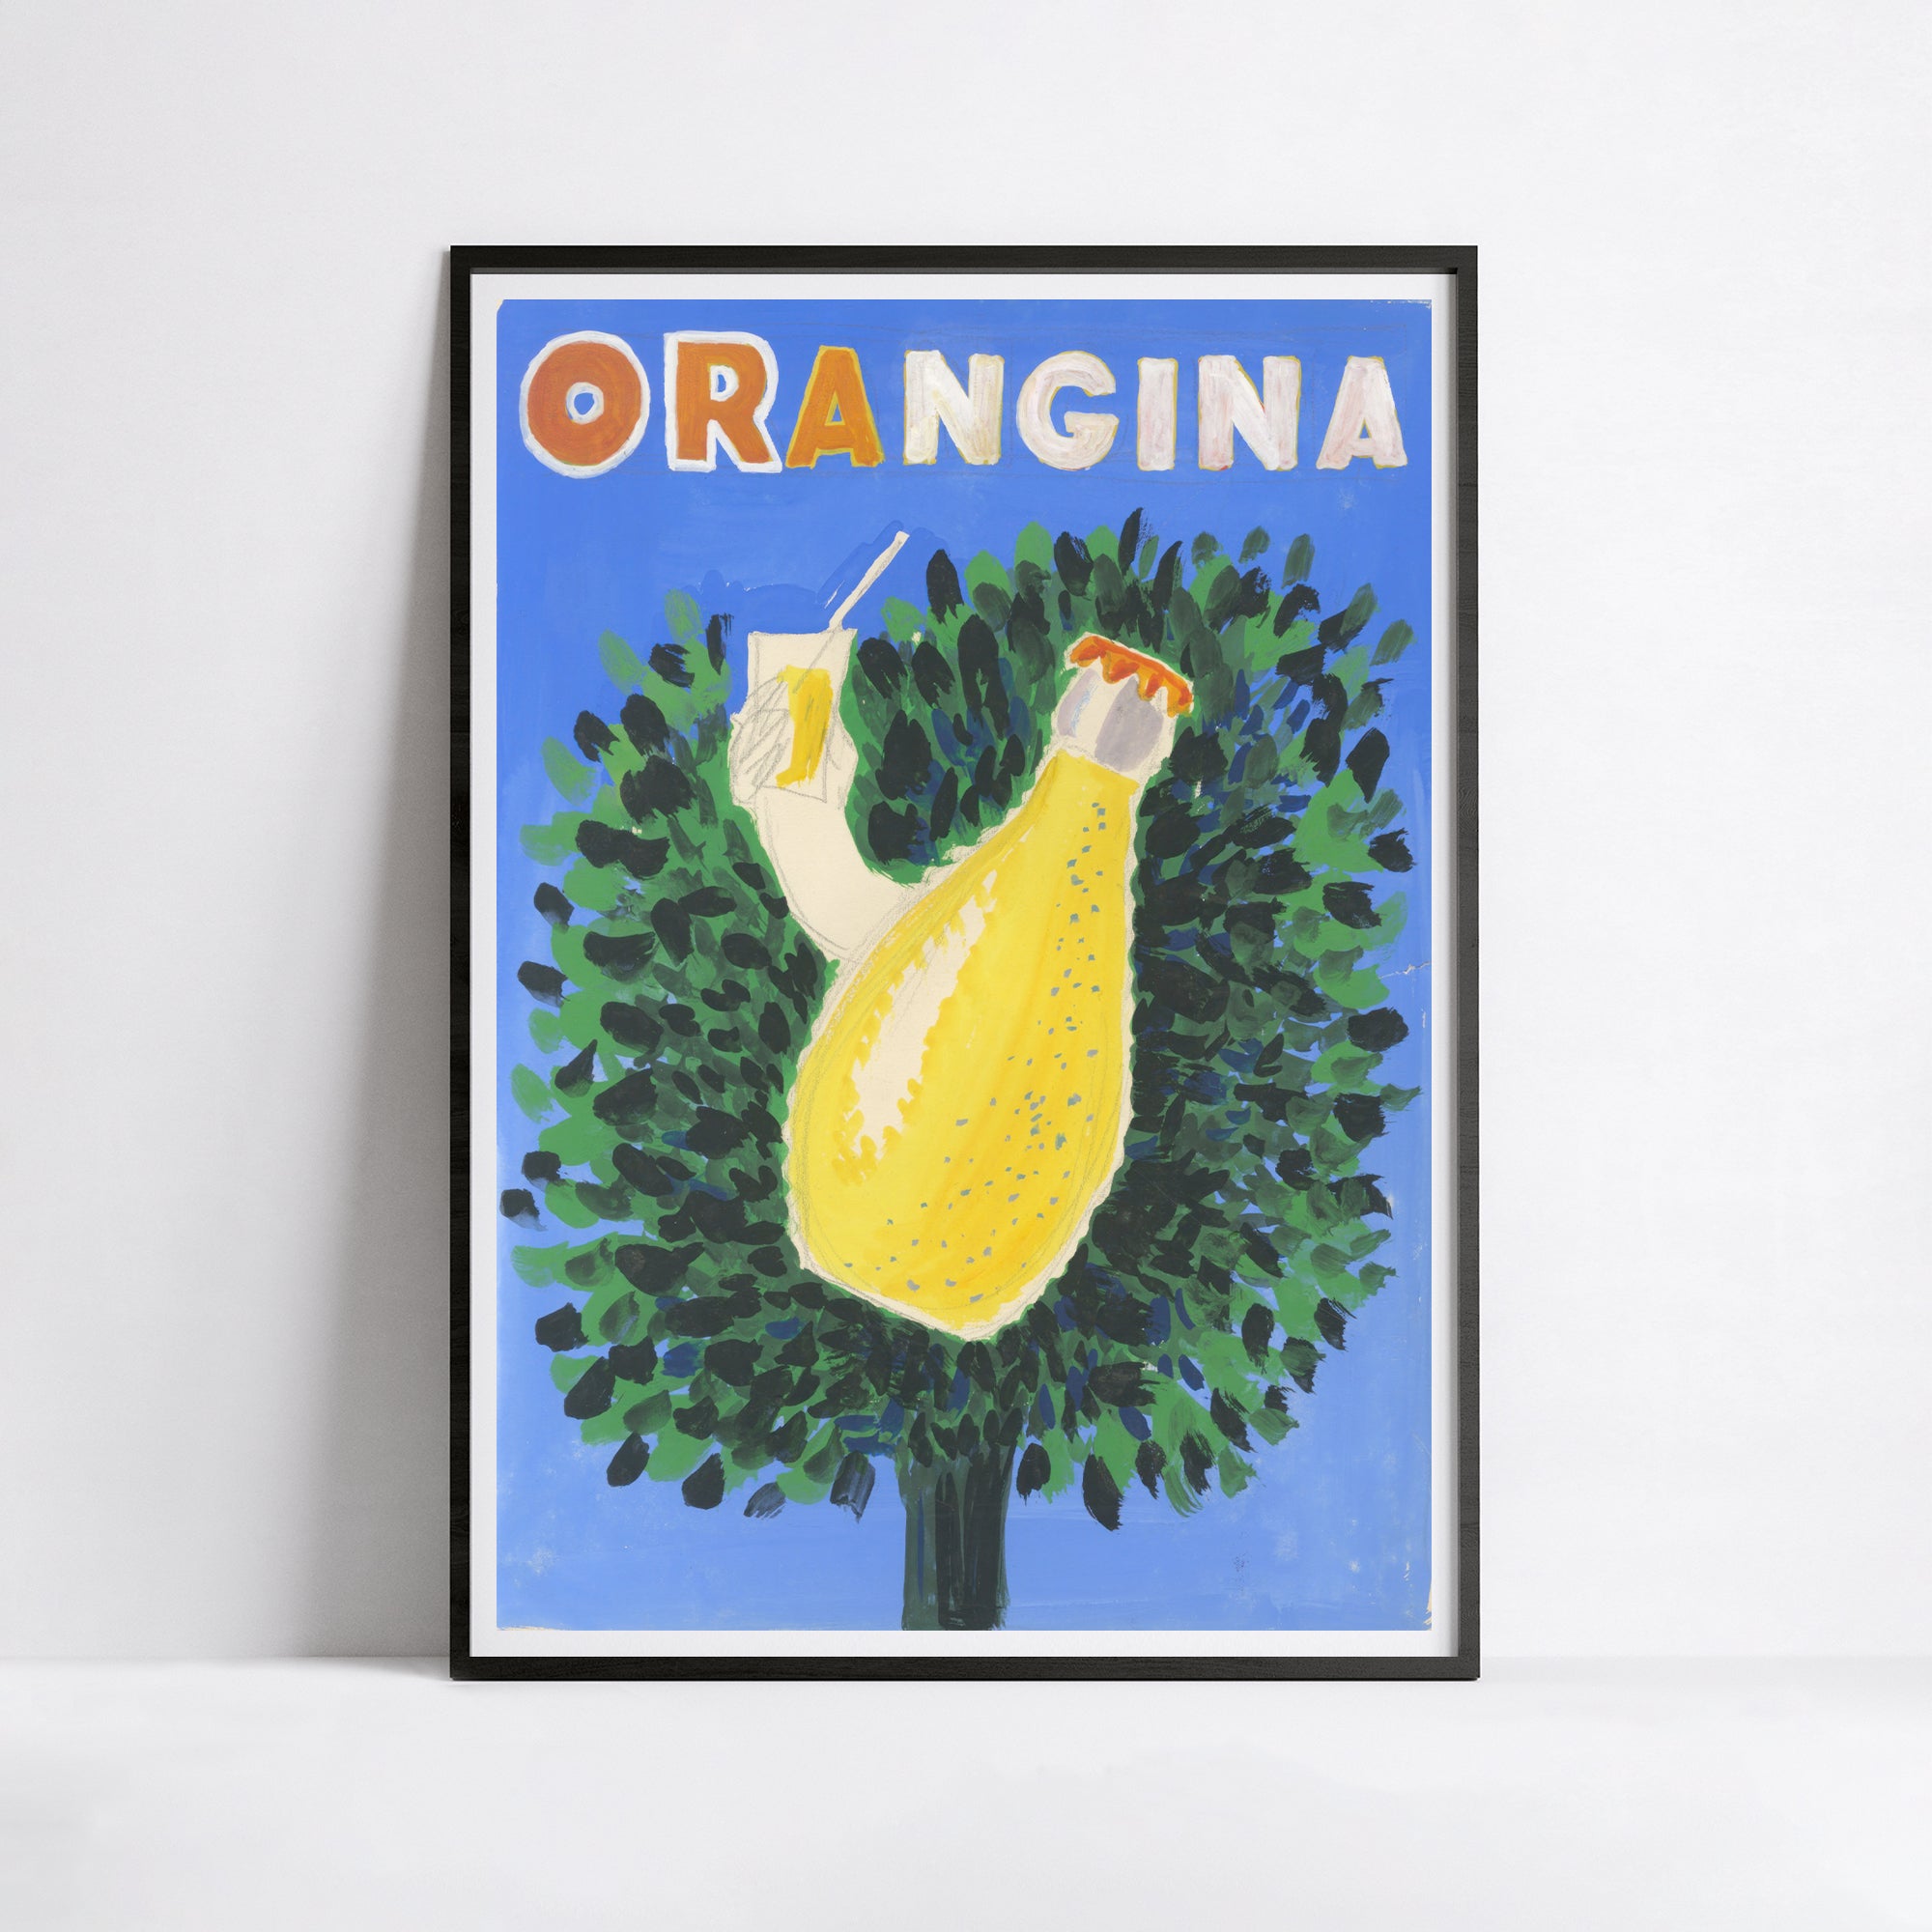 Affiche Orangina "Arbre fruitier" - Villemot - Haute Définition - papier mat 230gr/m²